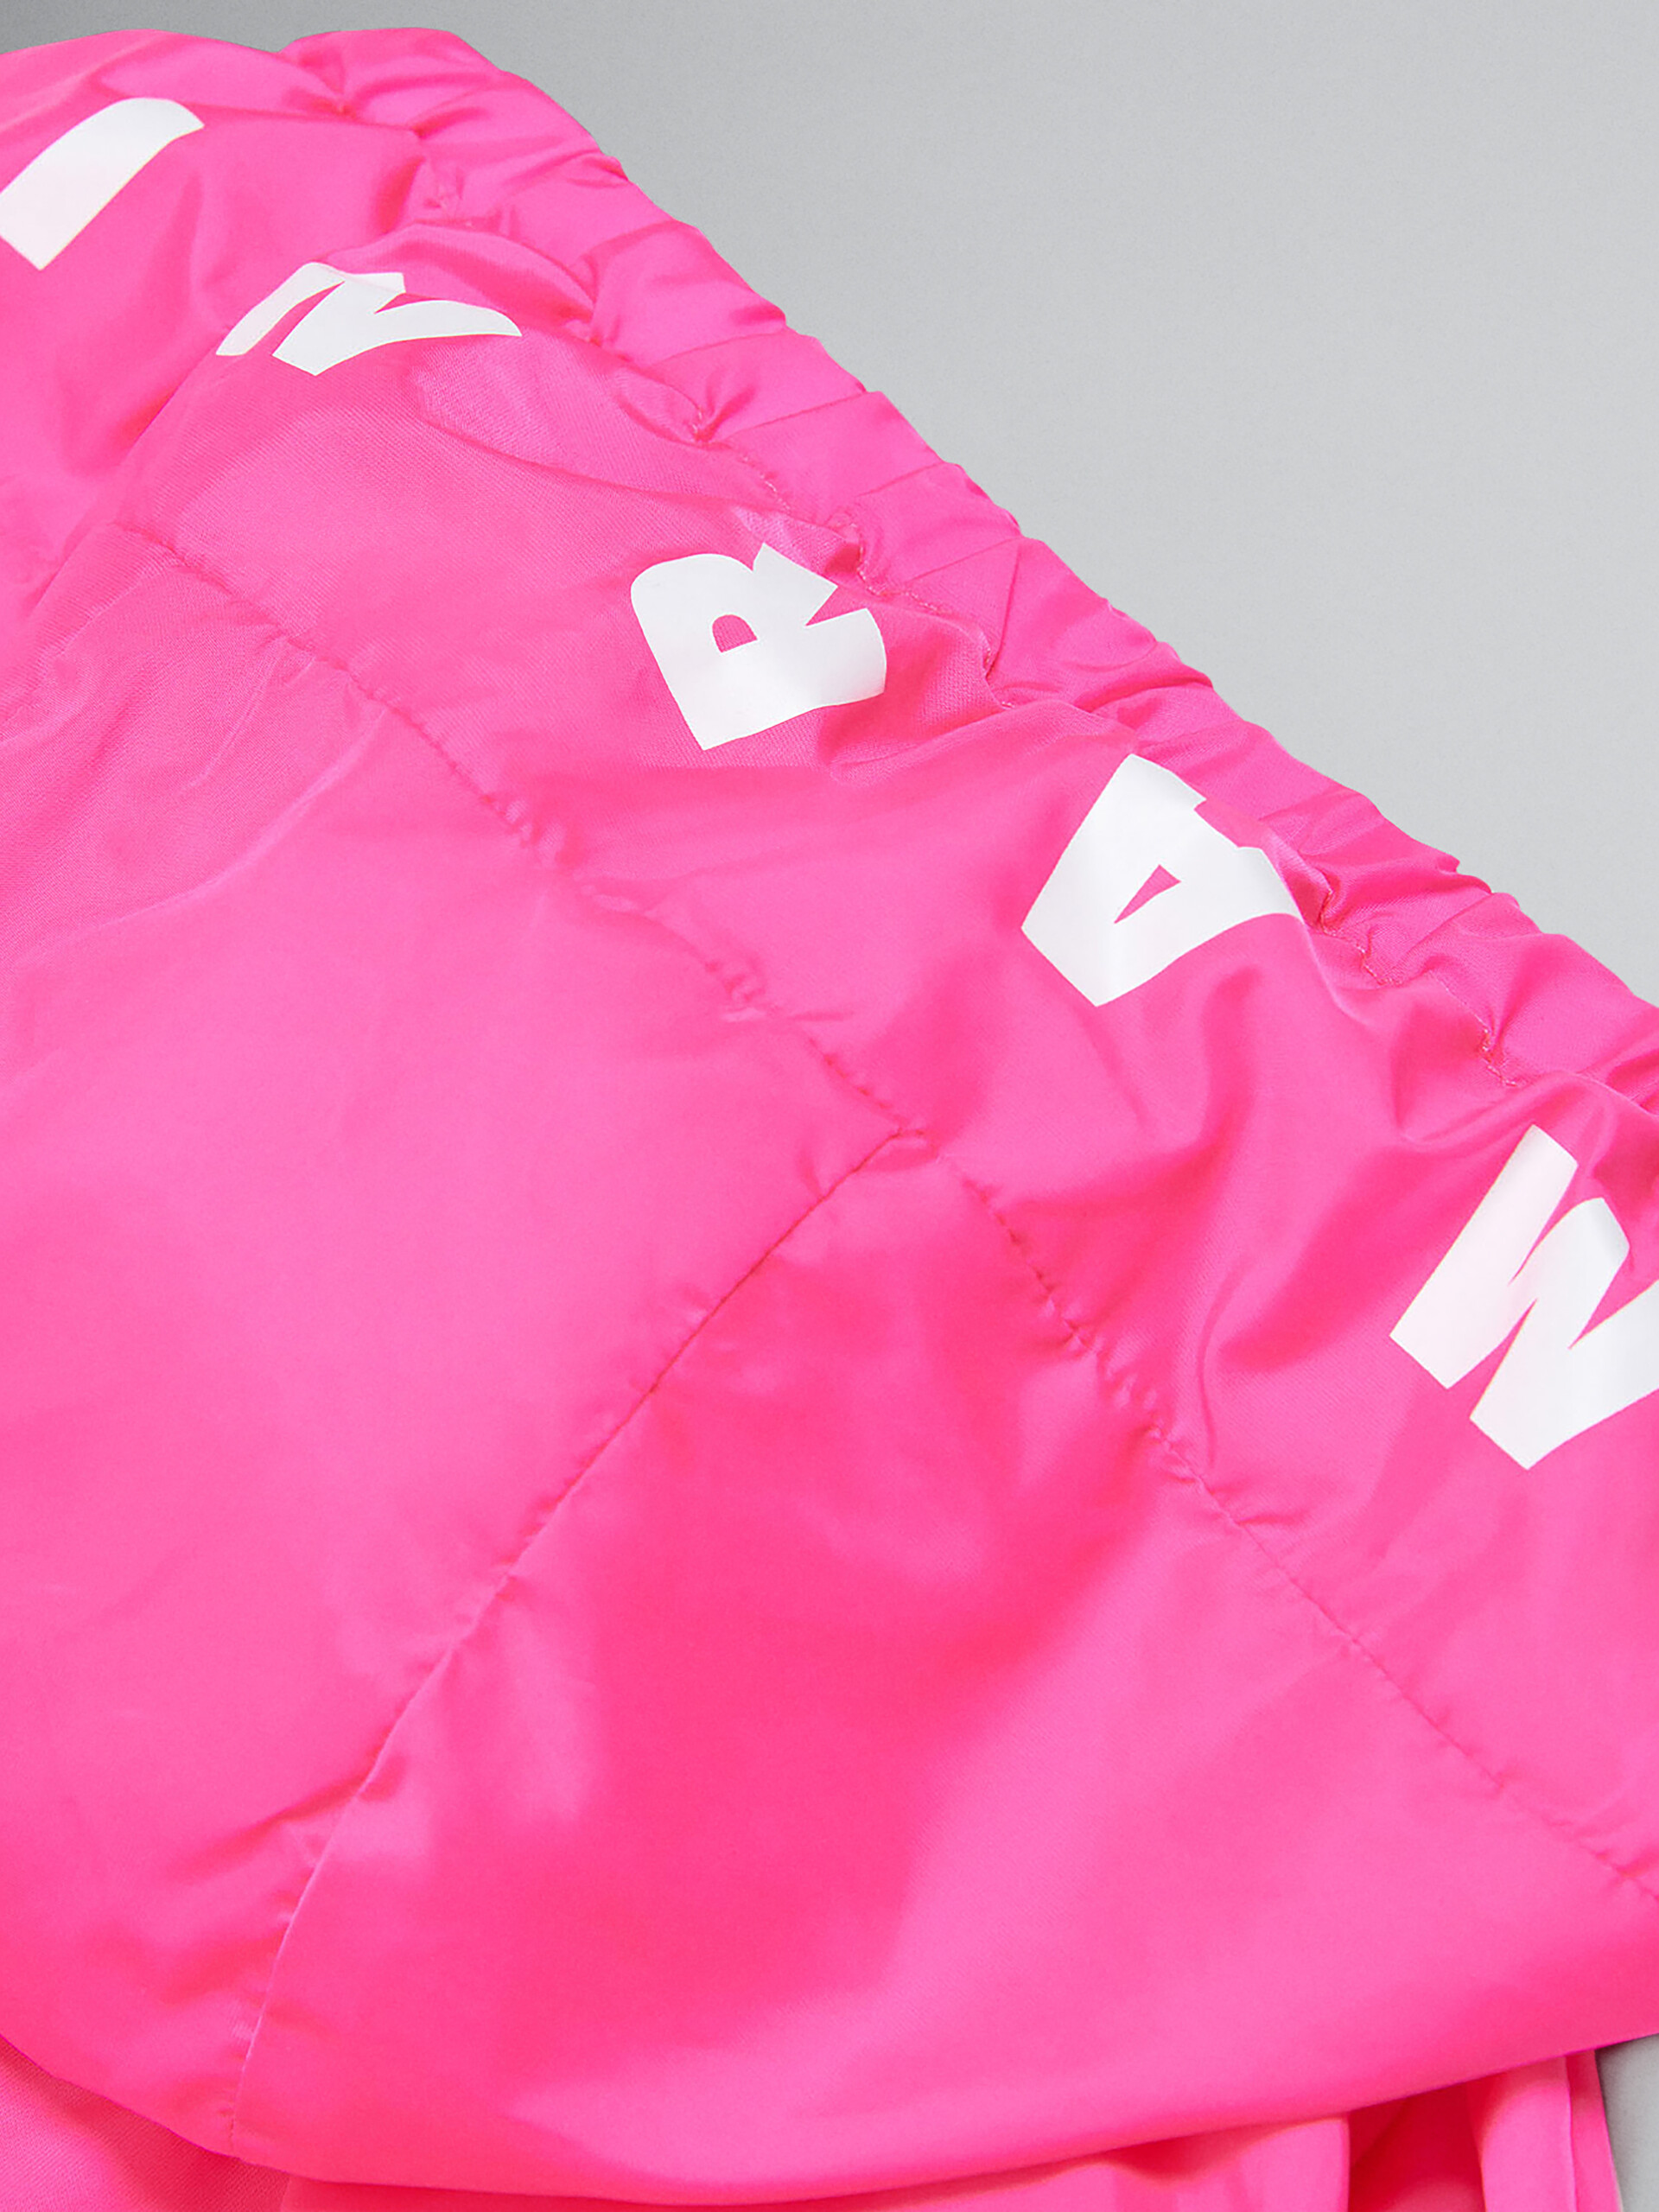 Chaqueta impermeable rosa neón con logotipo en la capucha - Chaquetas - Image 3